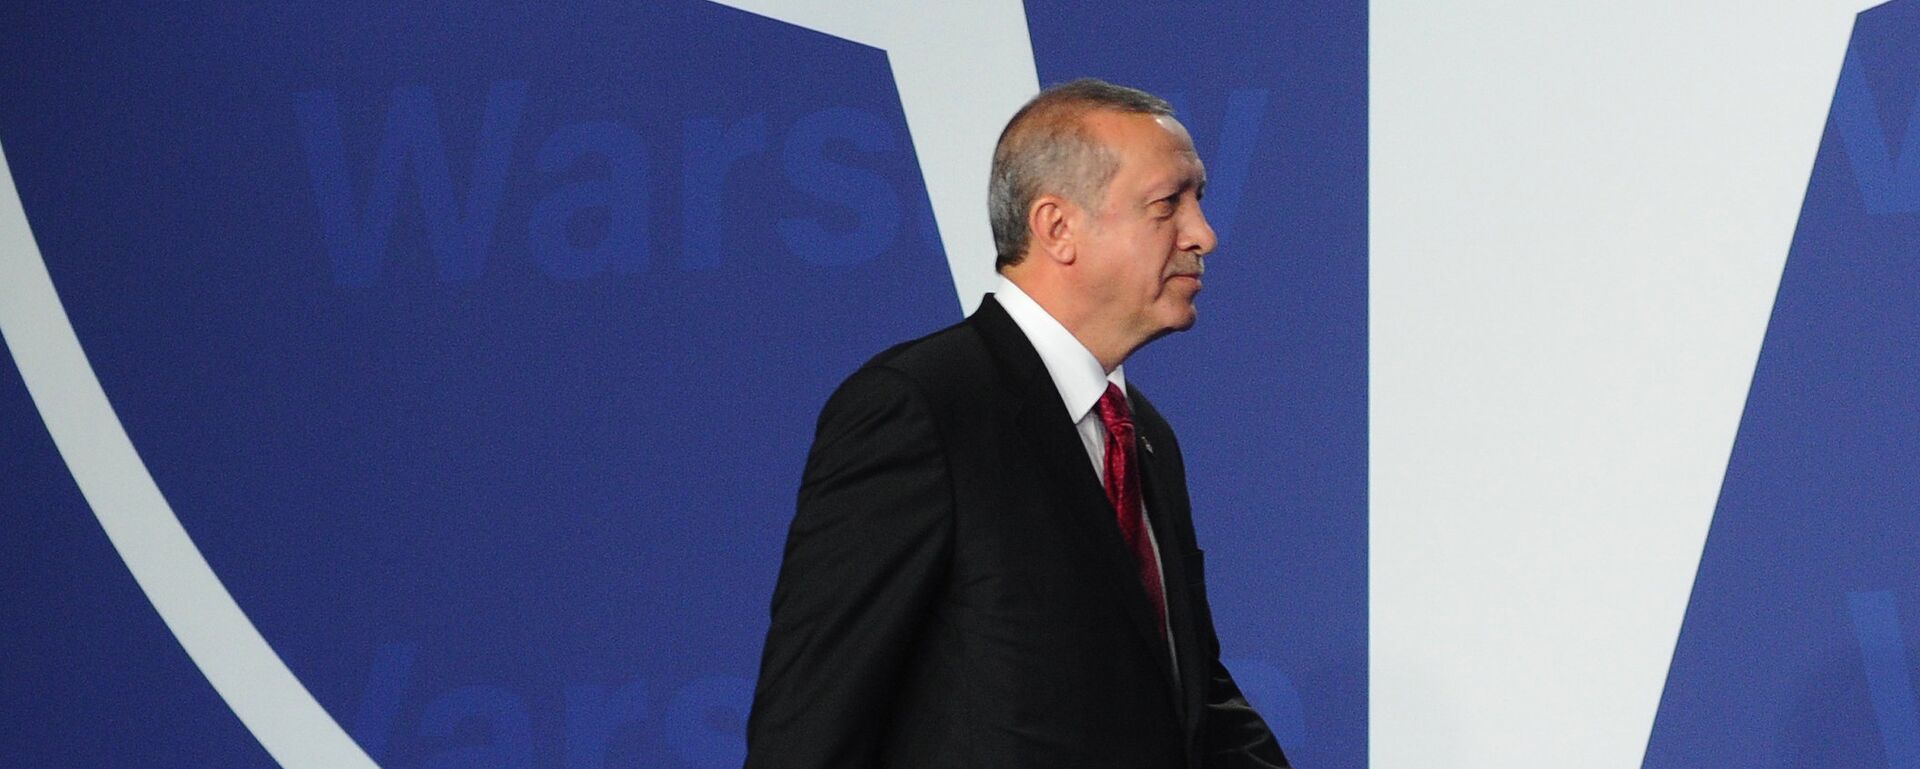 Recep Tayyip Erdogan, presidente de Turquía, en la cumbre de la OTAN en Varsovia (archivo) - Sputnik Mundo, 1920, 25.05.2022